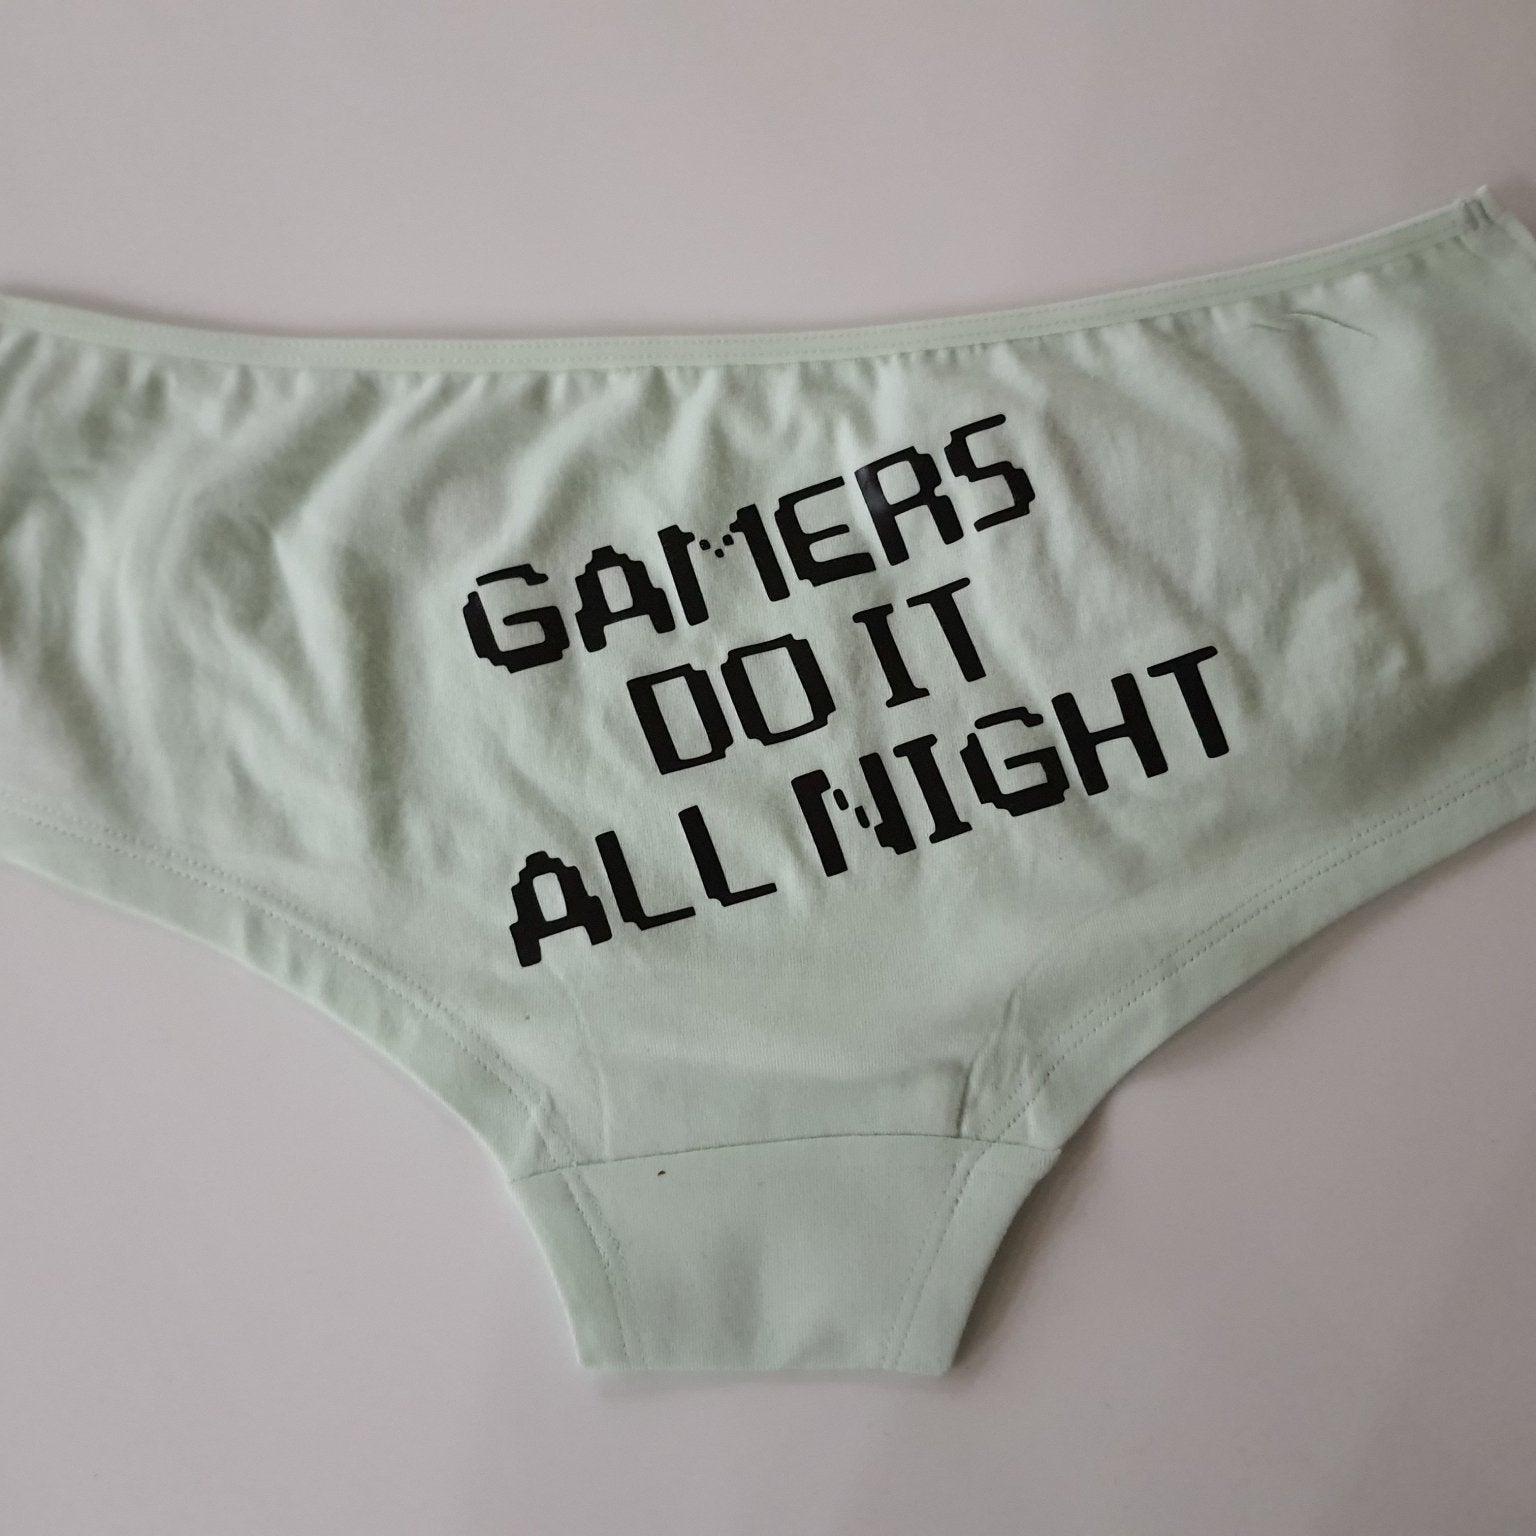 Women underwear - Gamers do it all night - Etba3lly